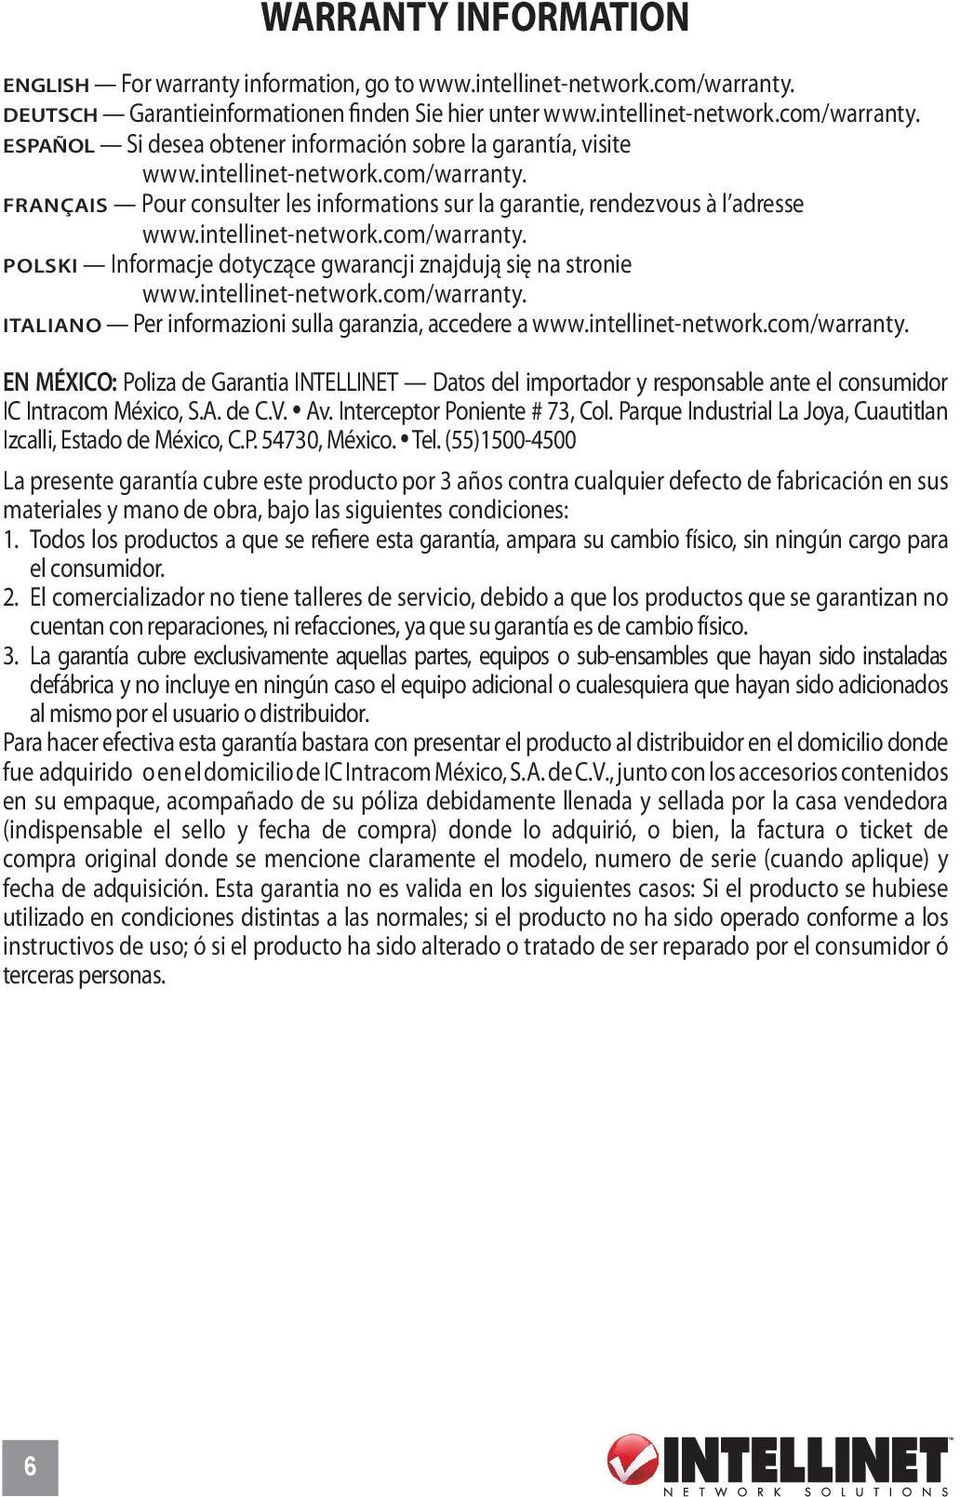 intellinet-network.com/warranty. Italiano Per informazioni sulla garanzia, accedere a www.intellinet-network.com/warranty. EN MéXICO: Poliza de Garantia INTELLINET Datos del importador y responsable ante el consumidor IC Intracom México, S.